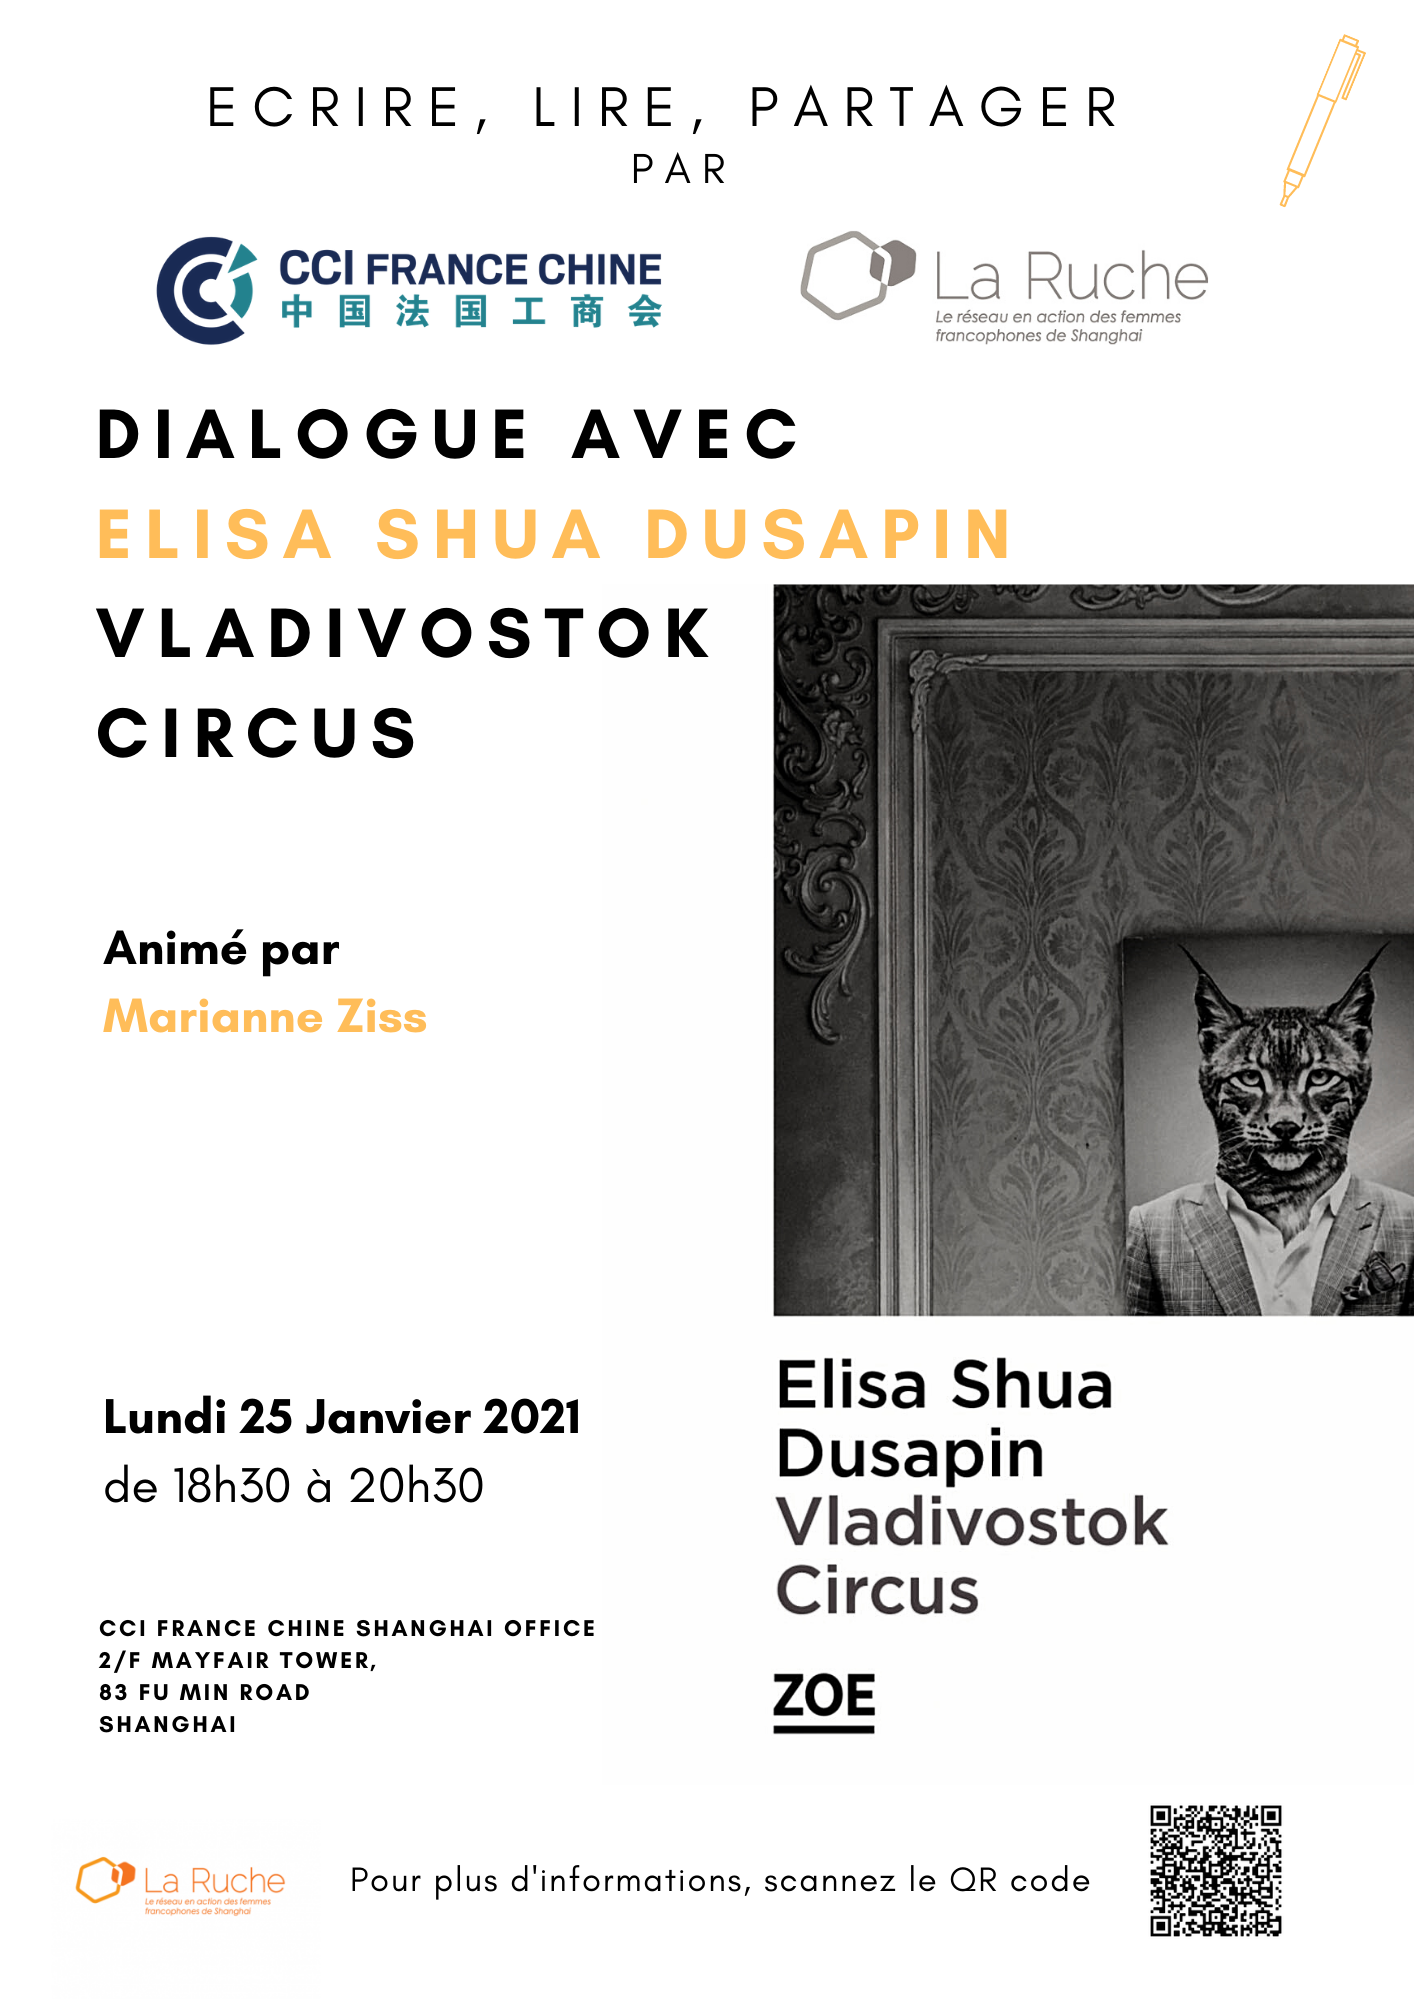 Lundi 25 Janvier - Partager, Lire, Ecrire - Part 2 : Dialogue avec Elisa Shua Dusapin